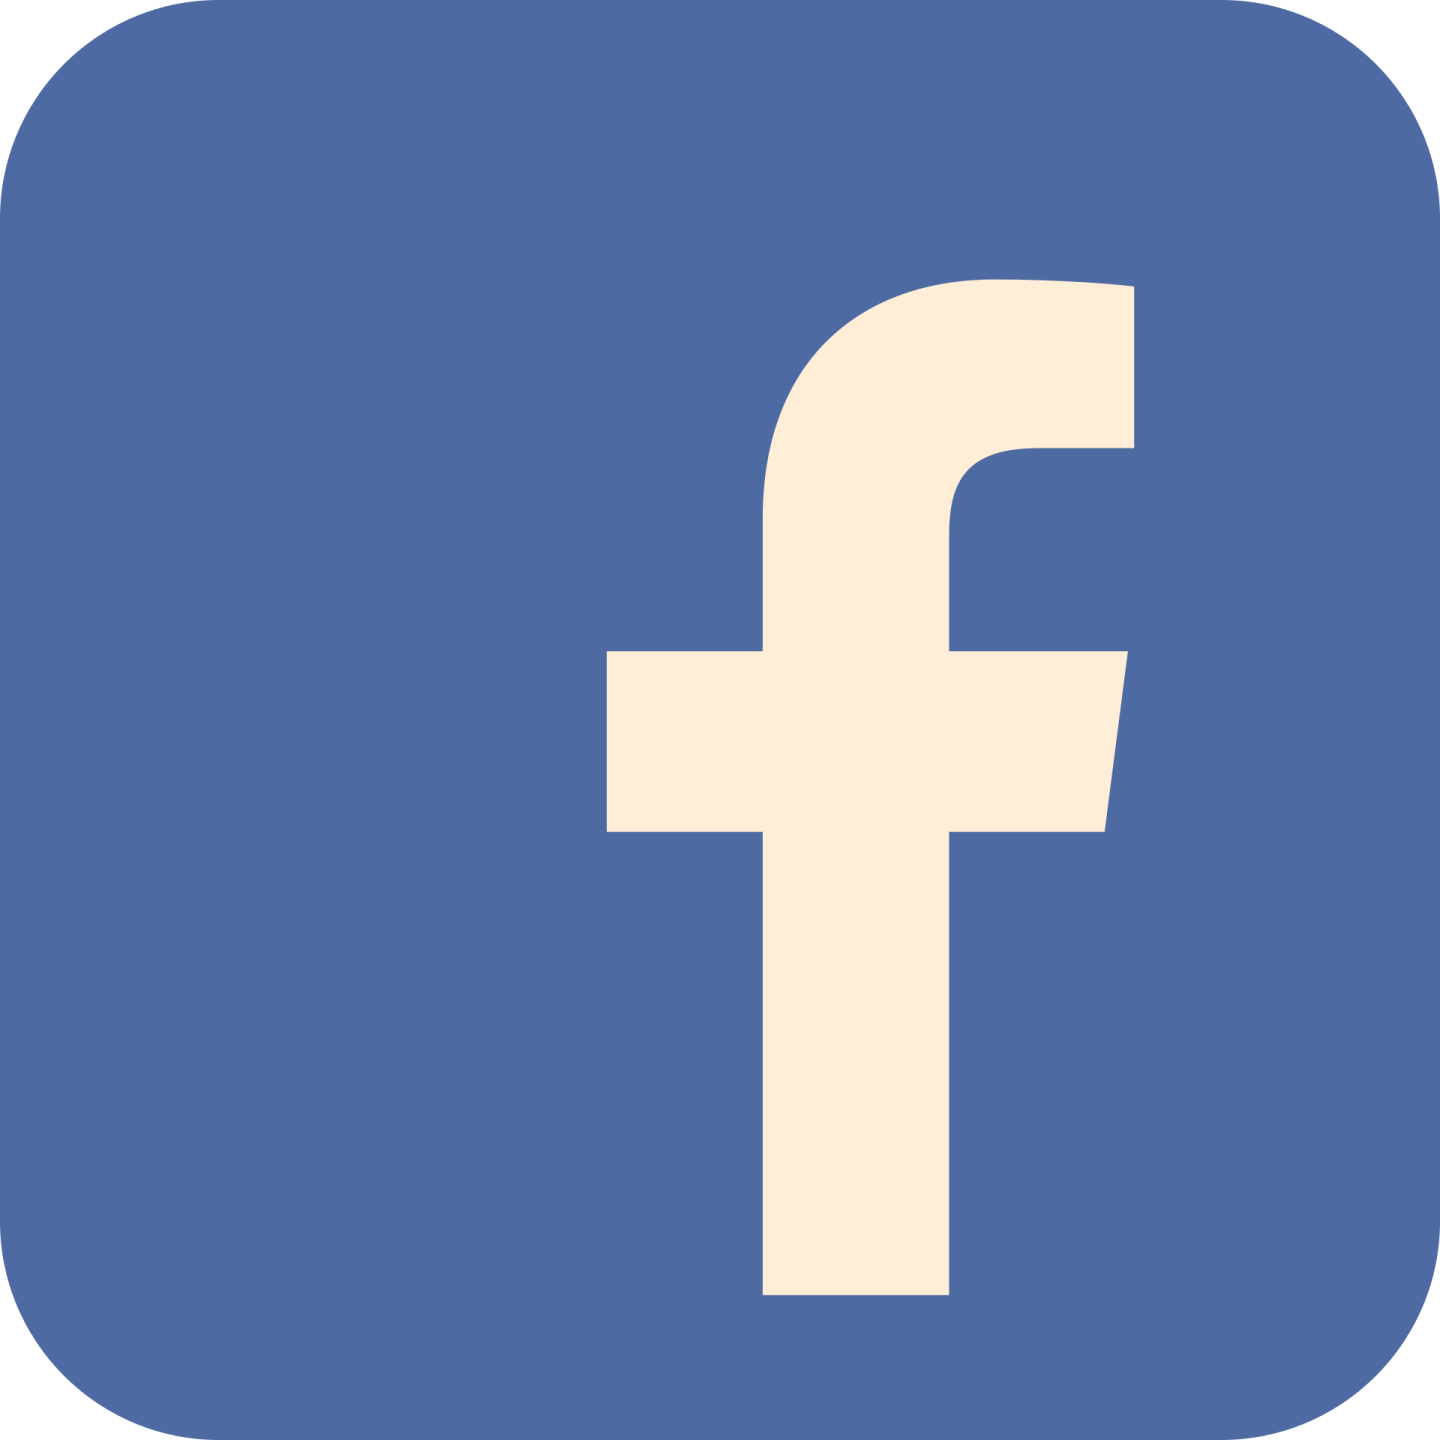 Facebook logo in color